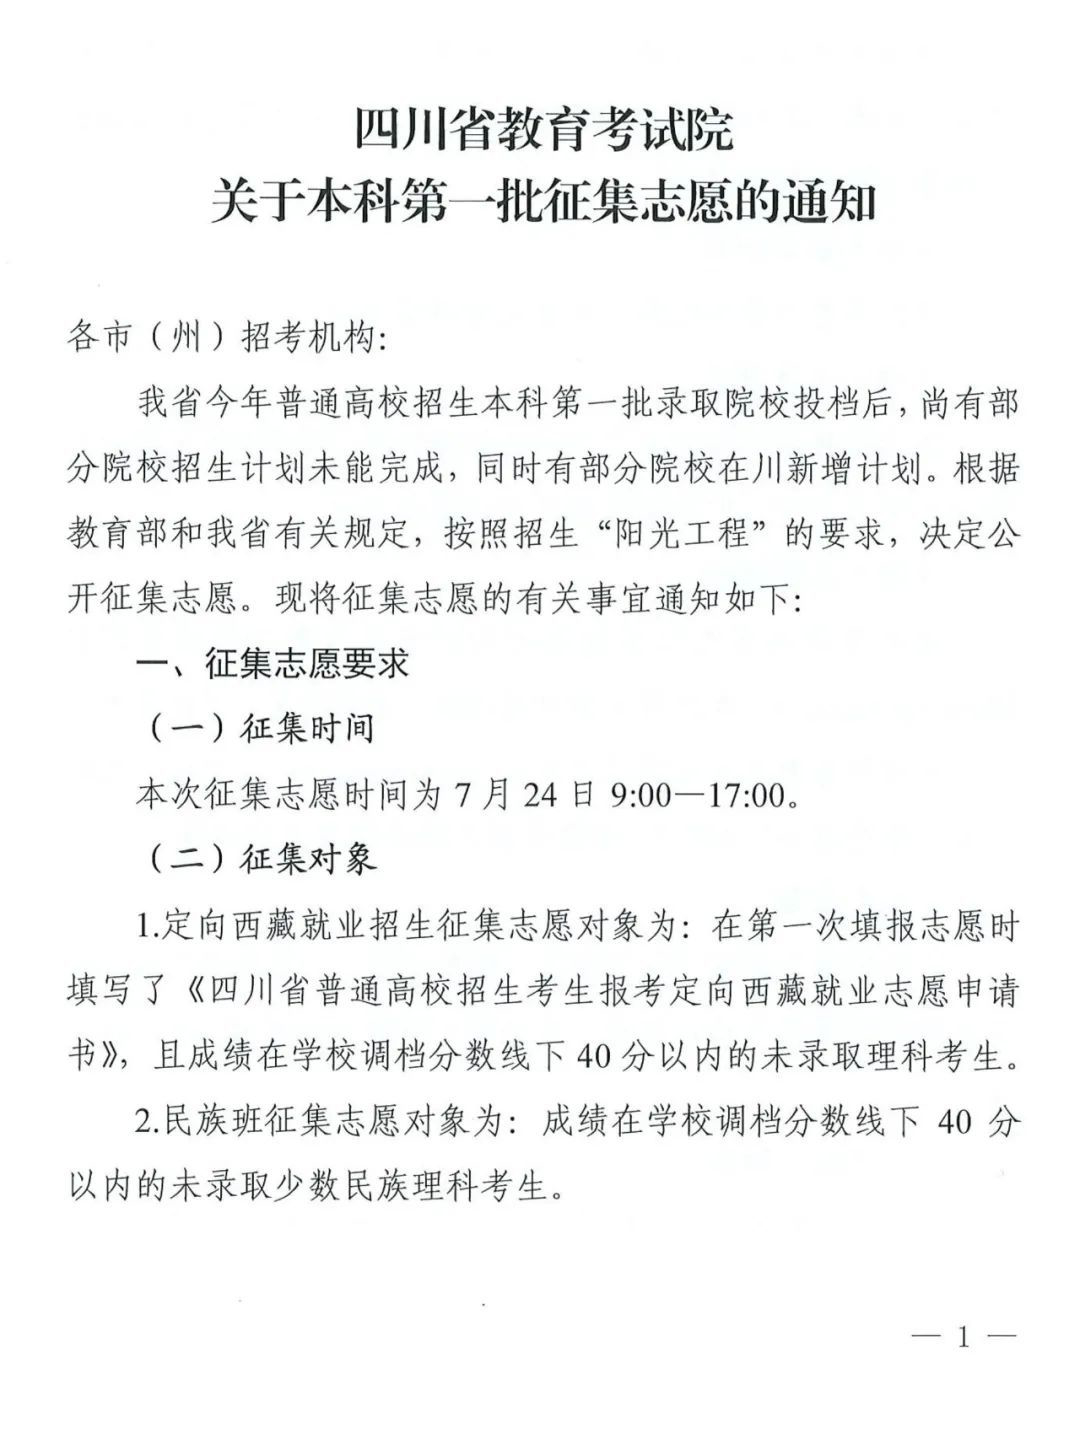 四川省教育考试院关于本科第一批征集志愿的通知